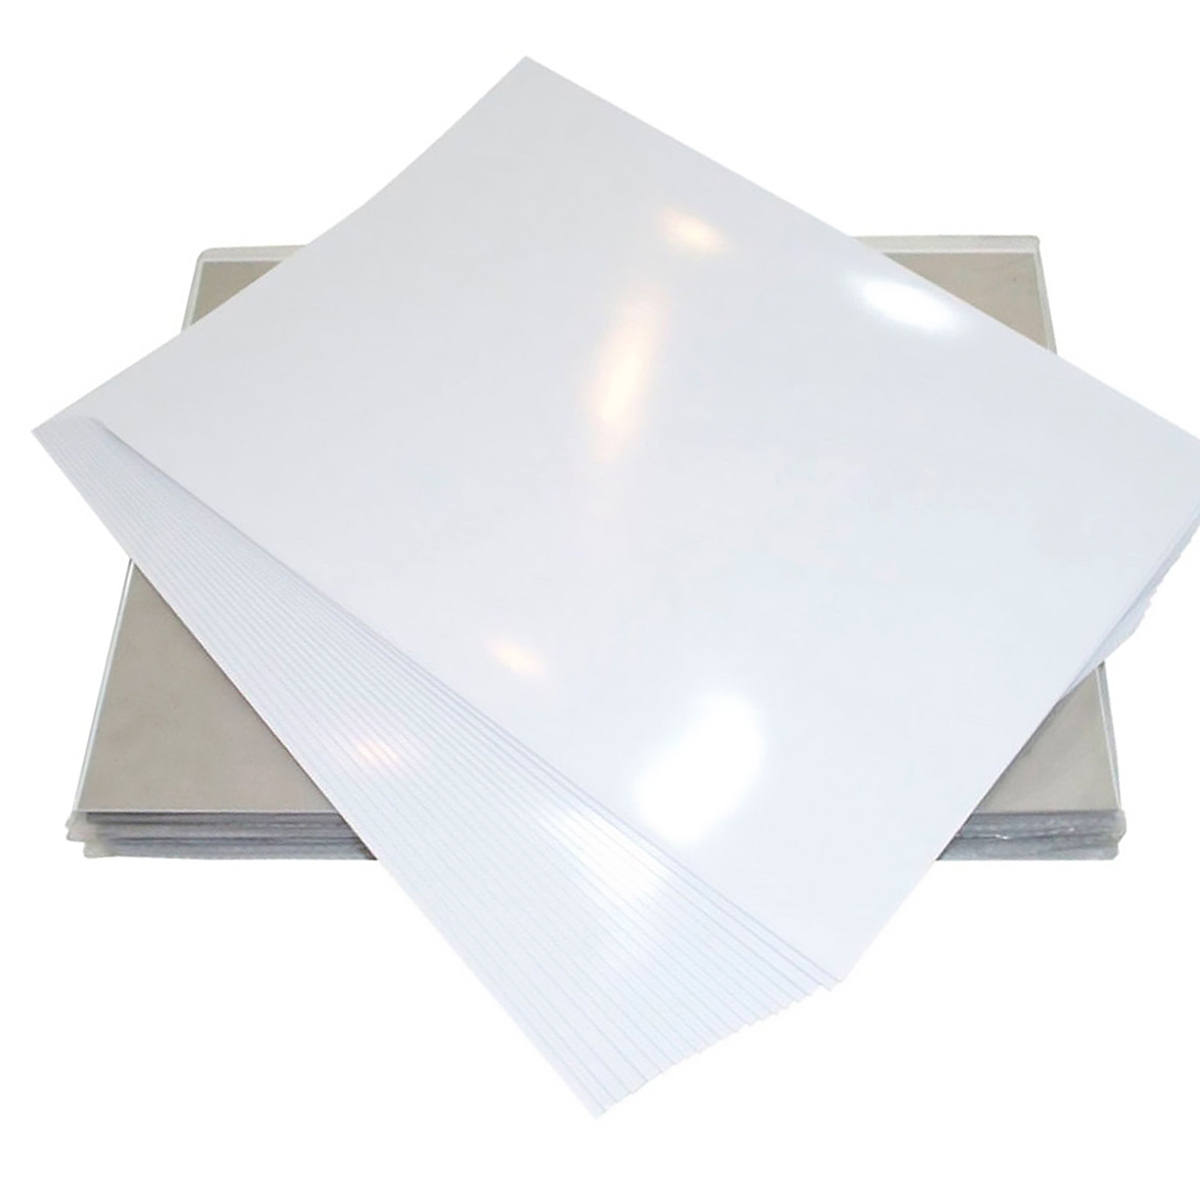 Papel Adesivo Fotográfico 80g A4 Glossy Branco Brilhante Resistente à Água / 100 folhas